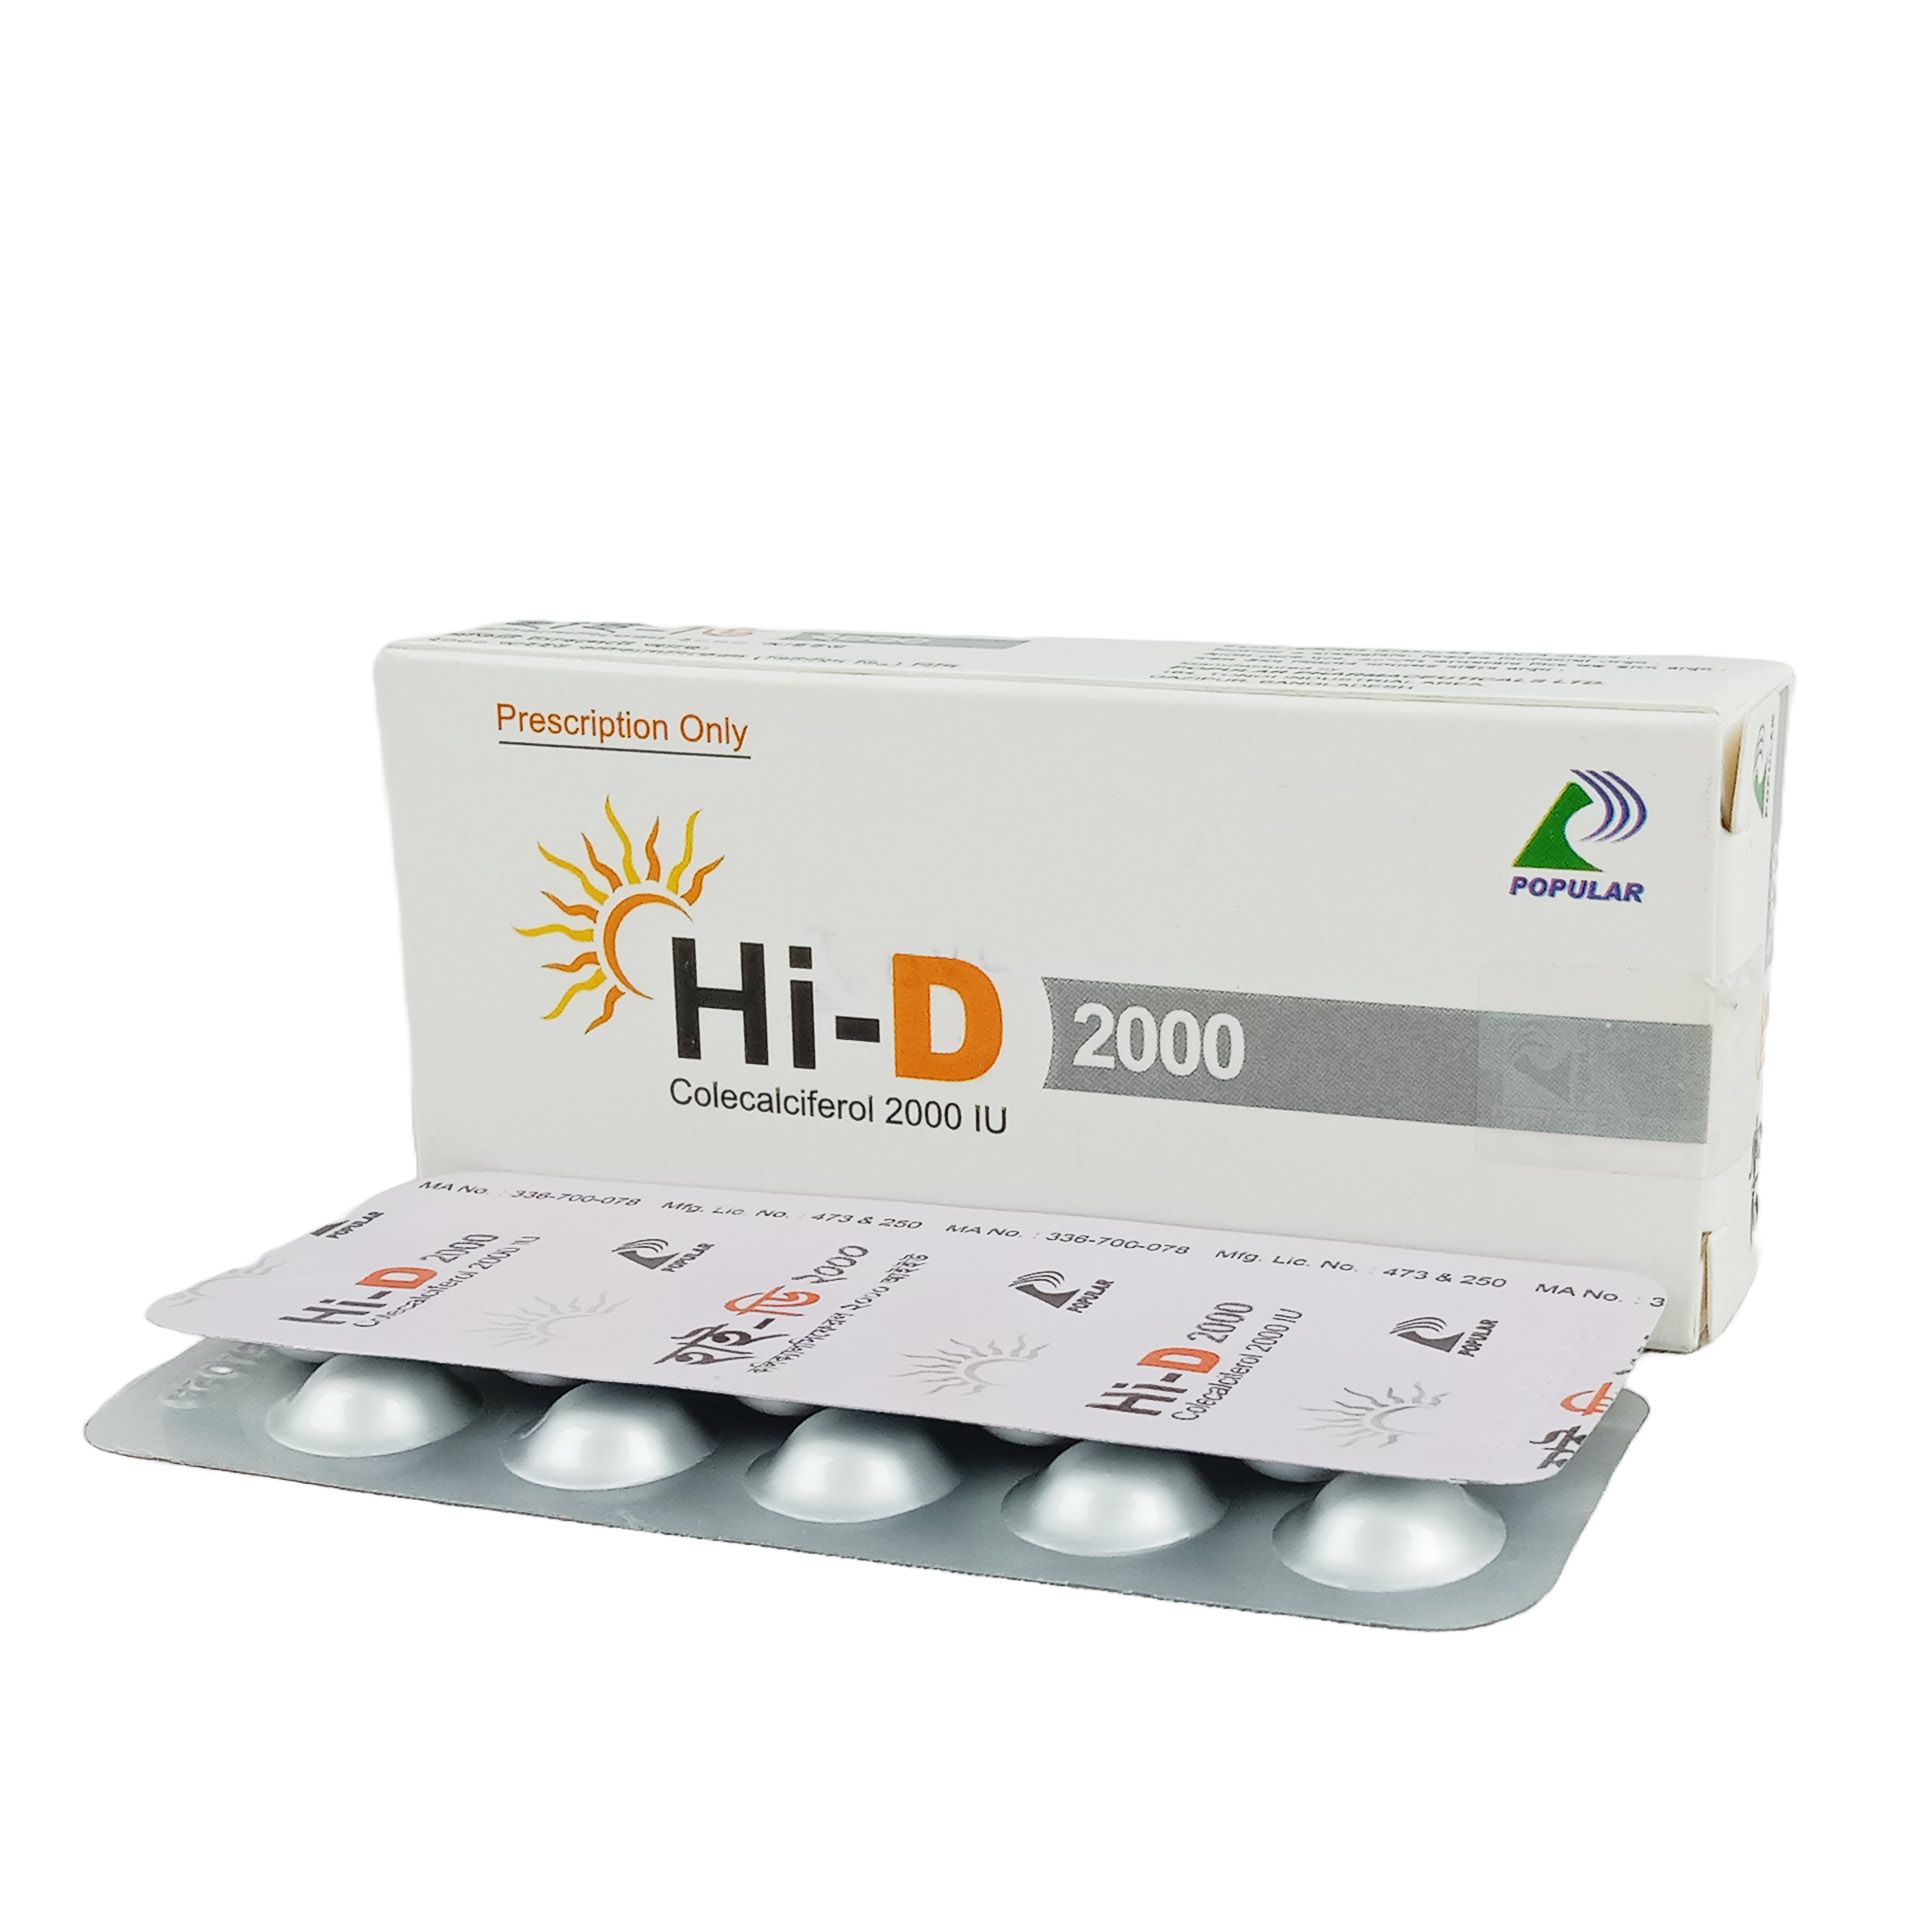 Hi-D 2000 2000IU Tablet